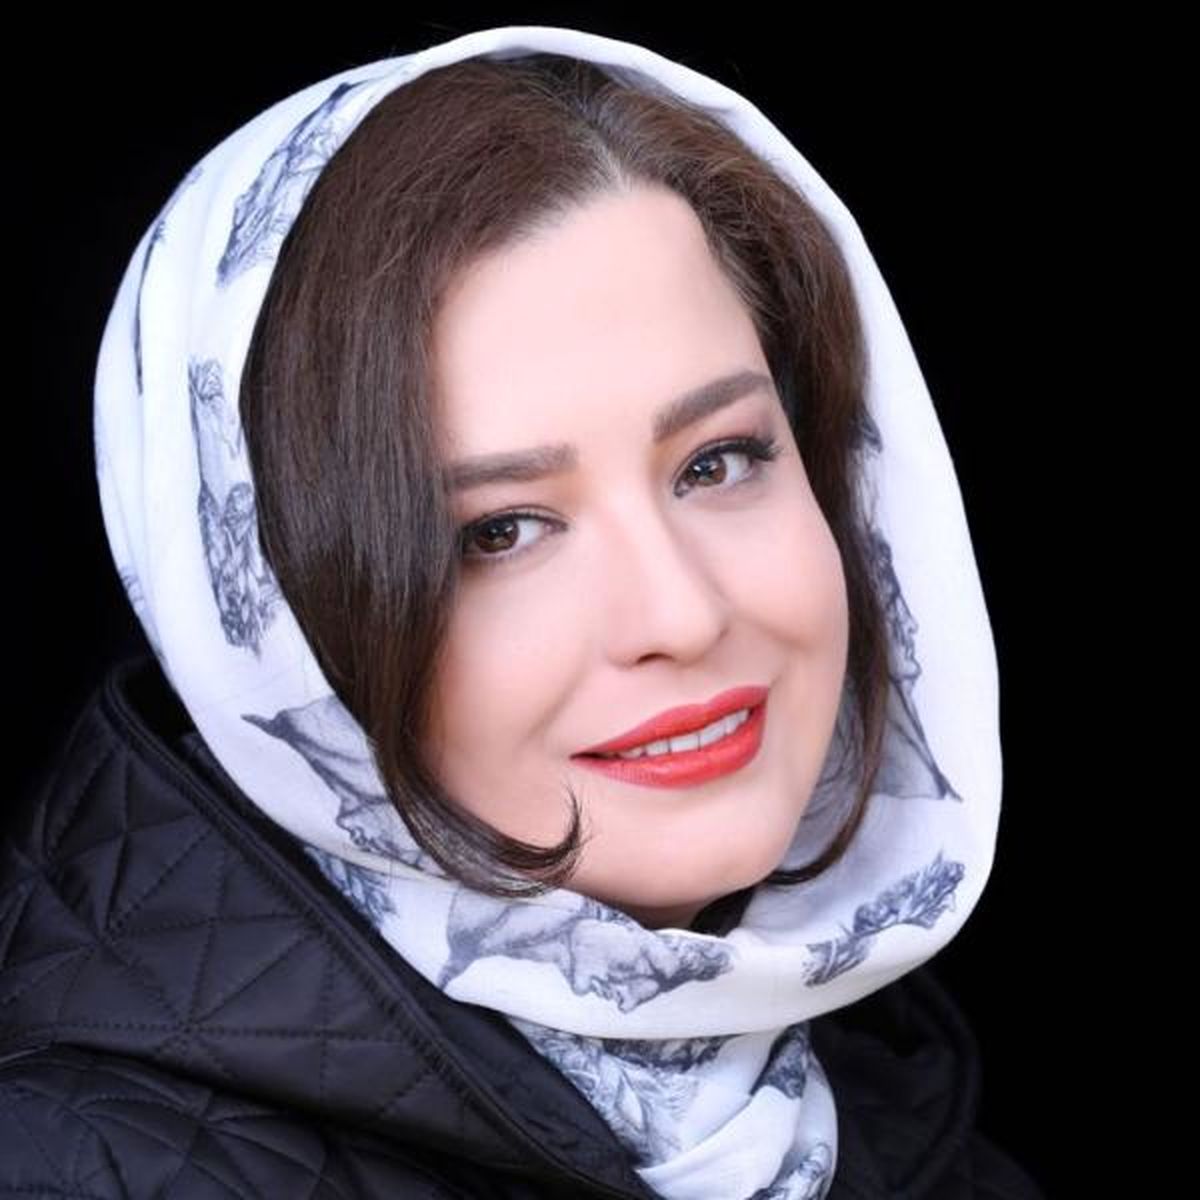 آبروریزی مهراوه شریفی نیا کار دستش داد | عکس جدید مهراوه شریفی نیا در مهمانی خصوصی